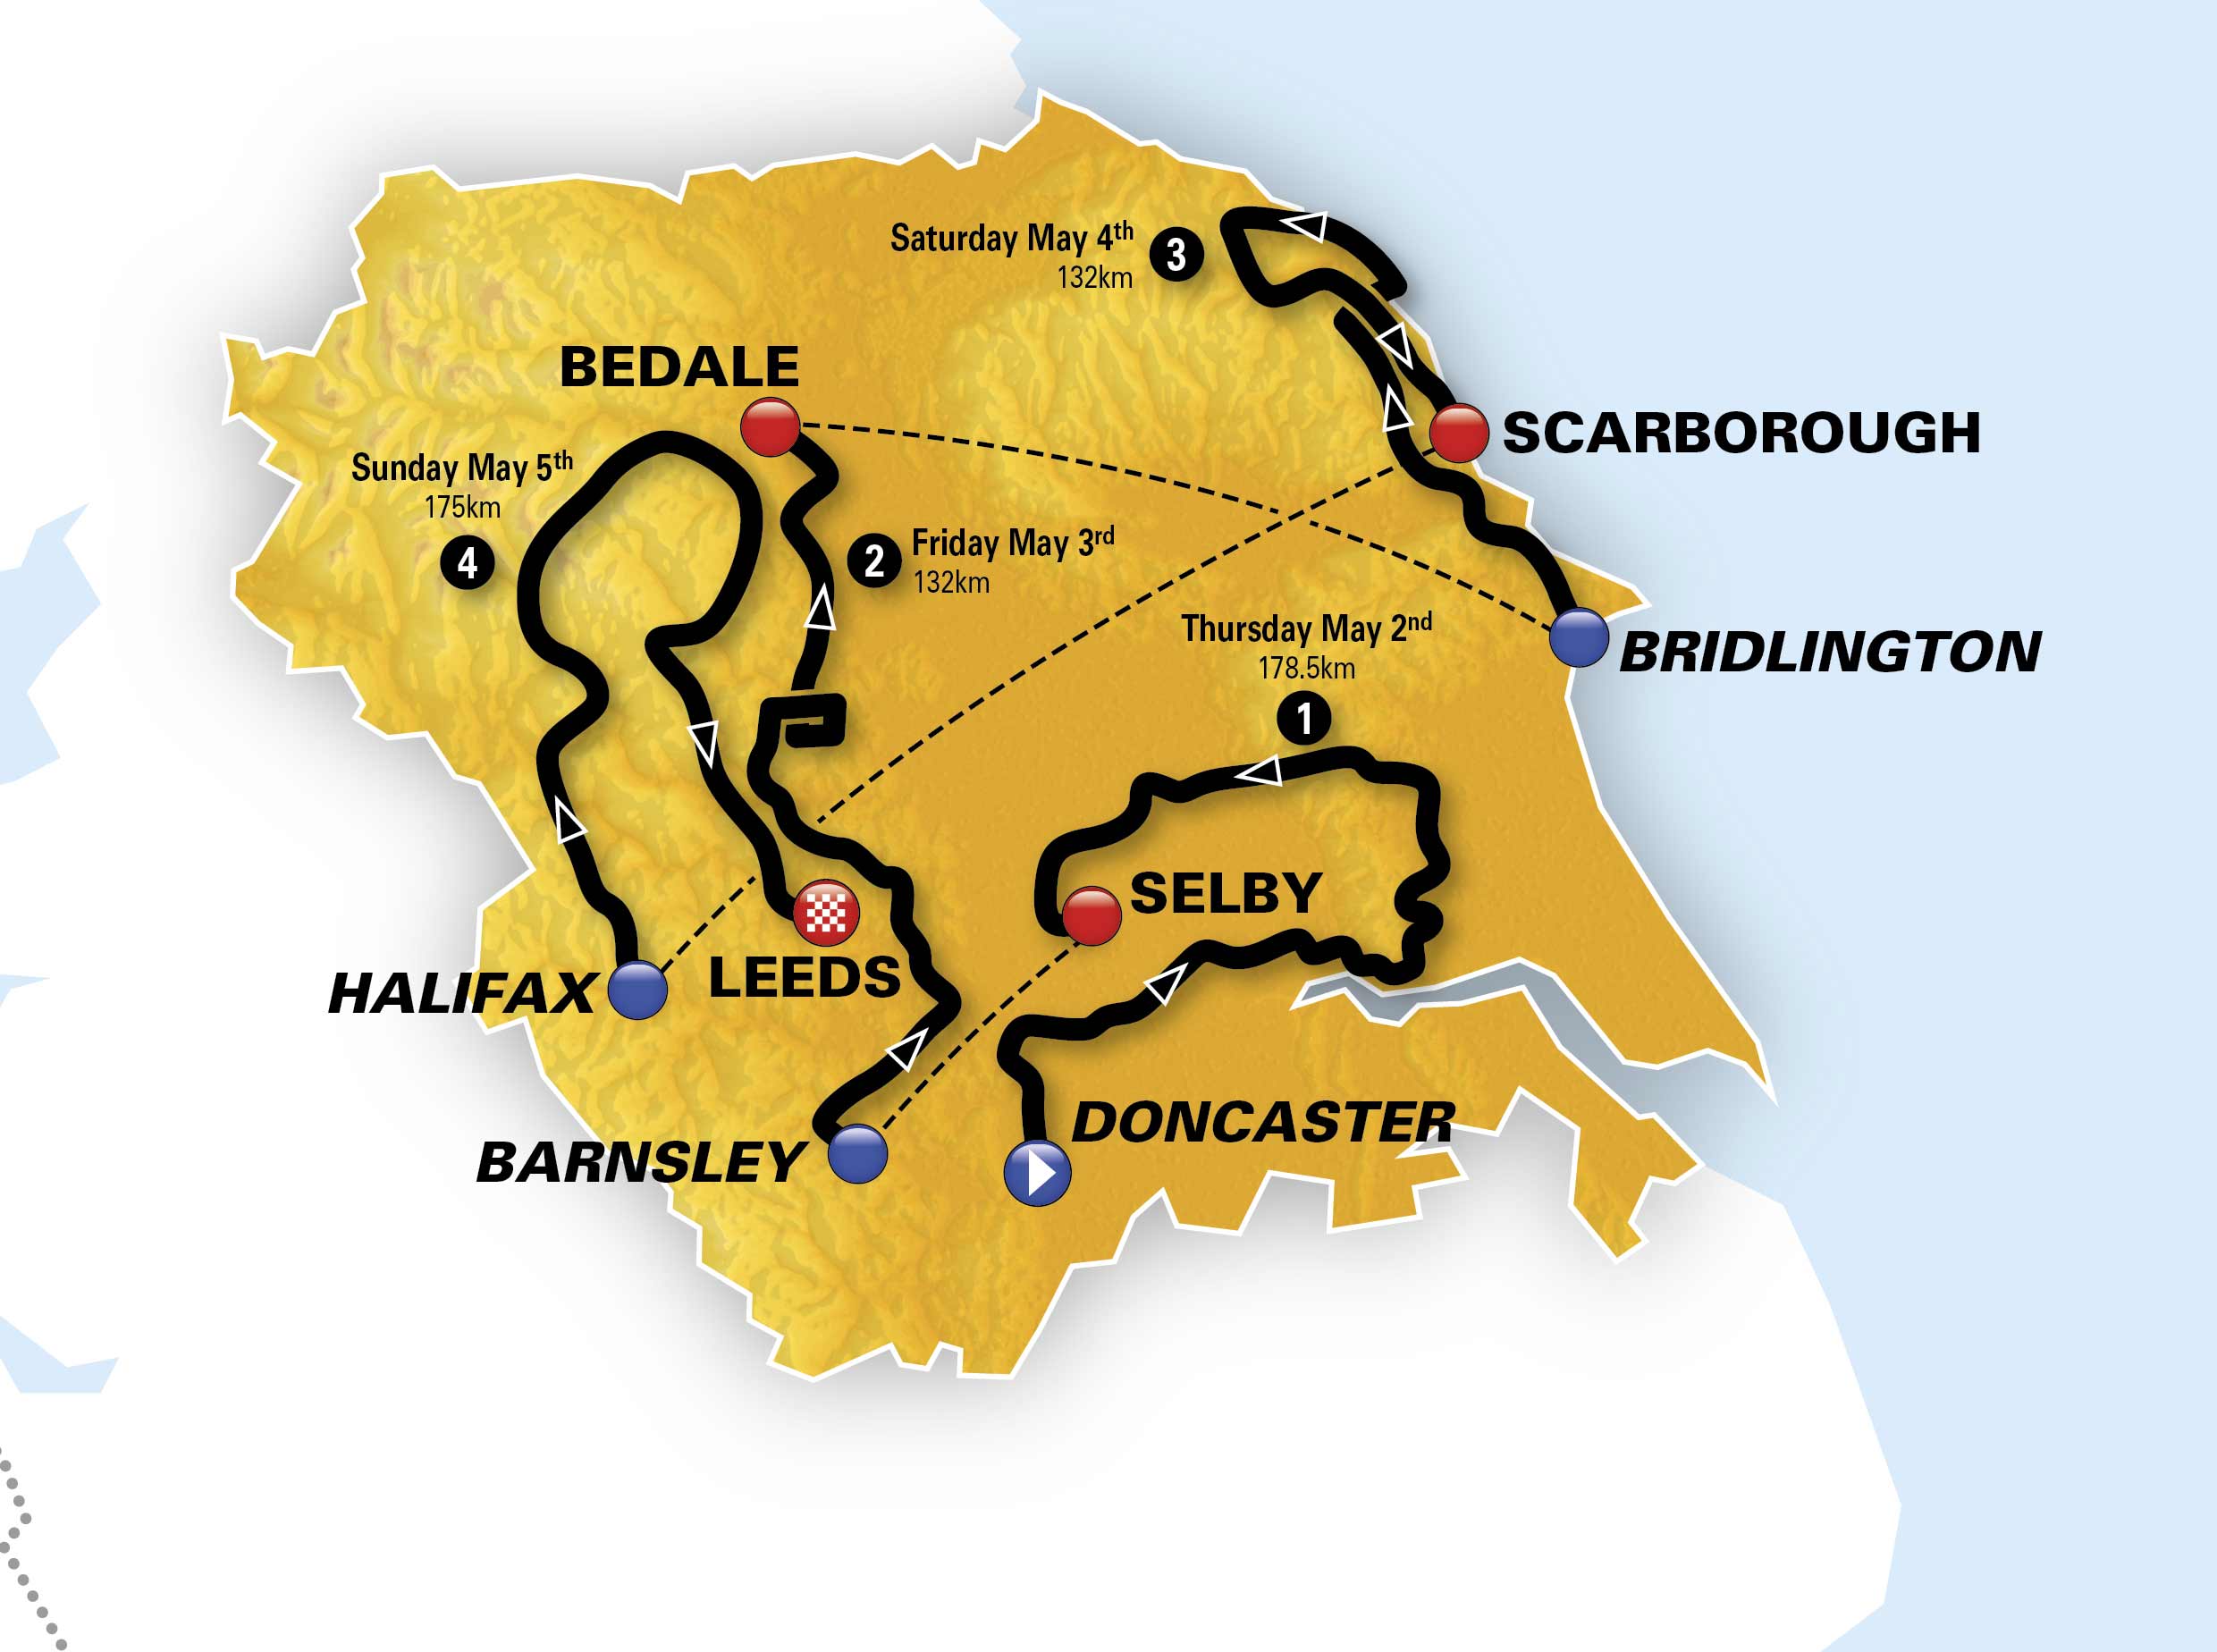 Routes for 2019 Tour de Yorkshire